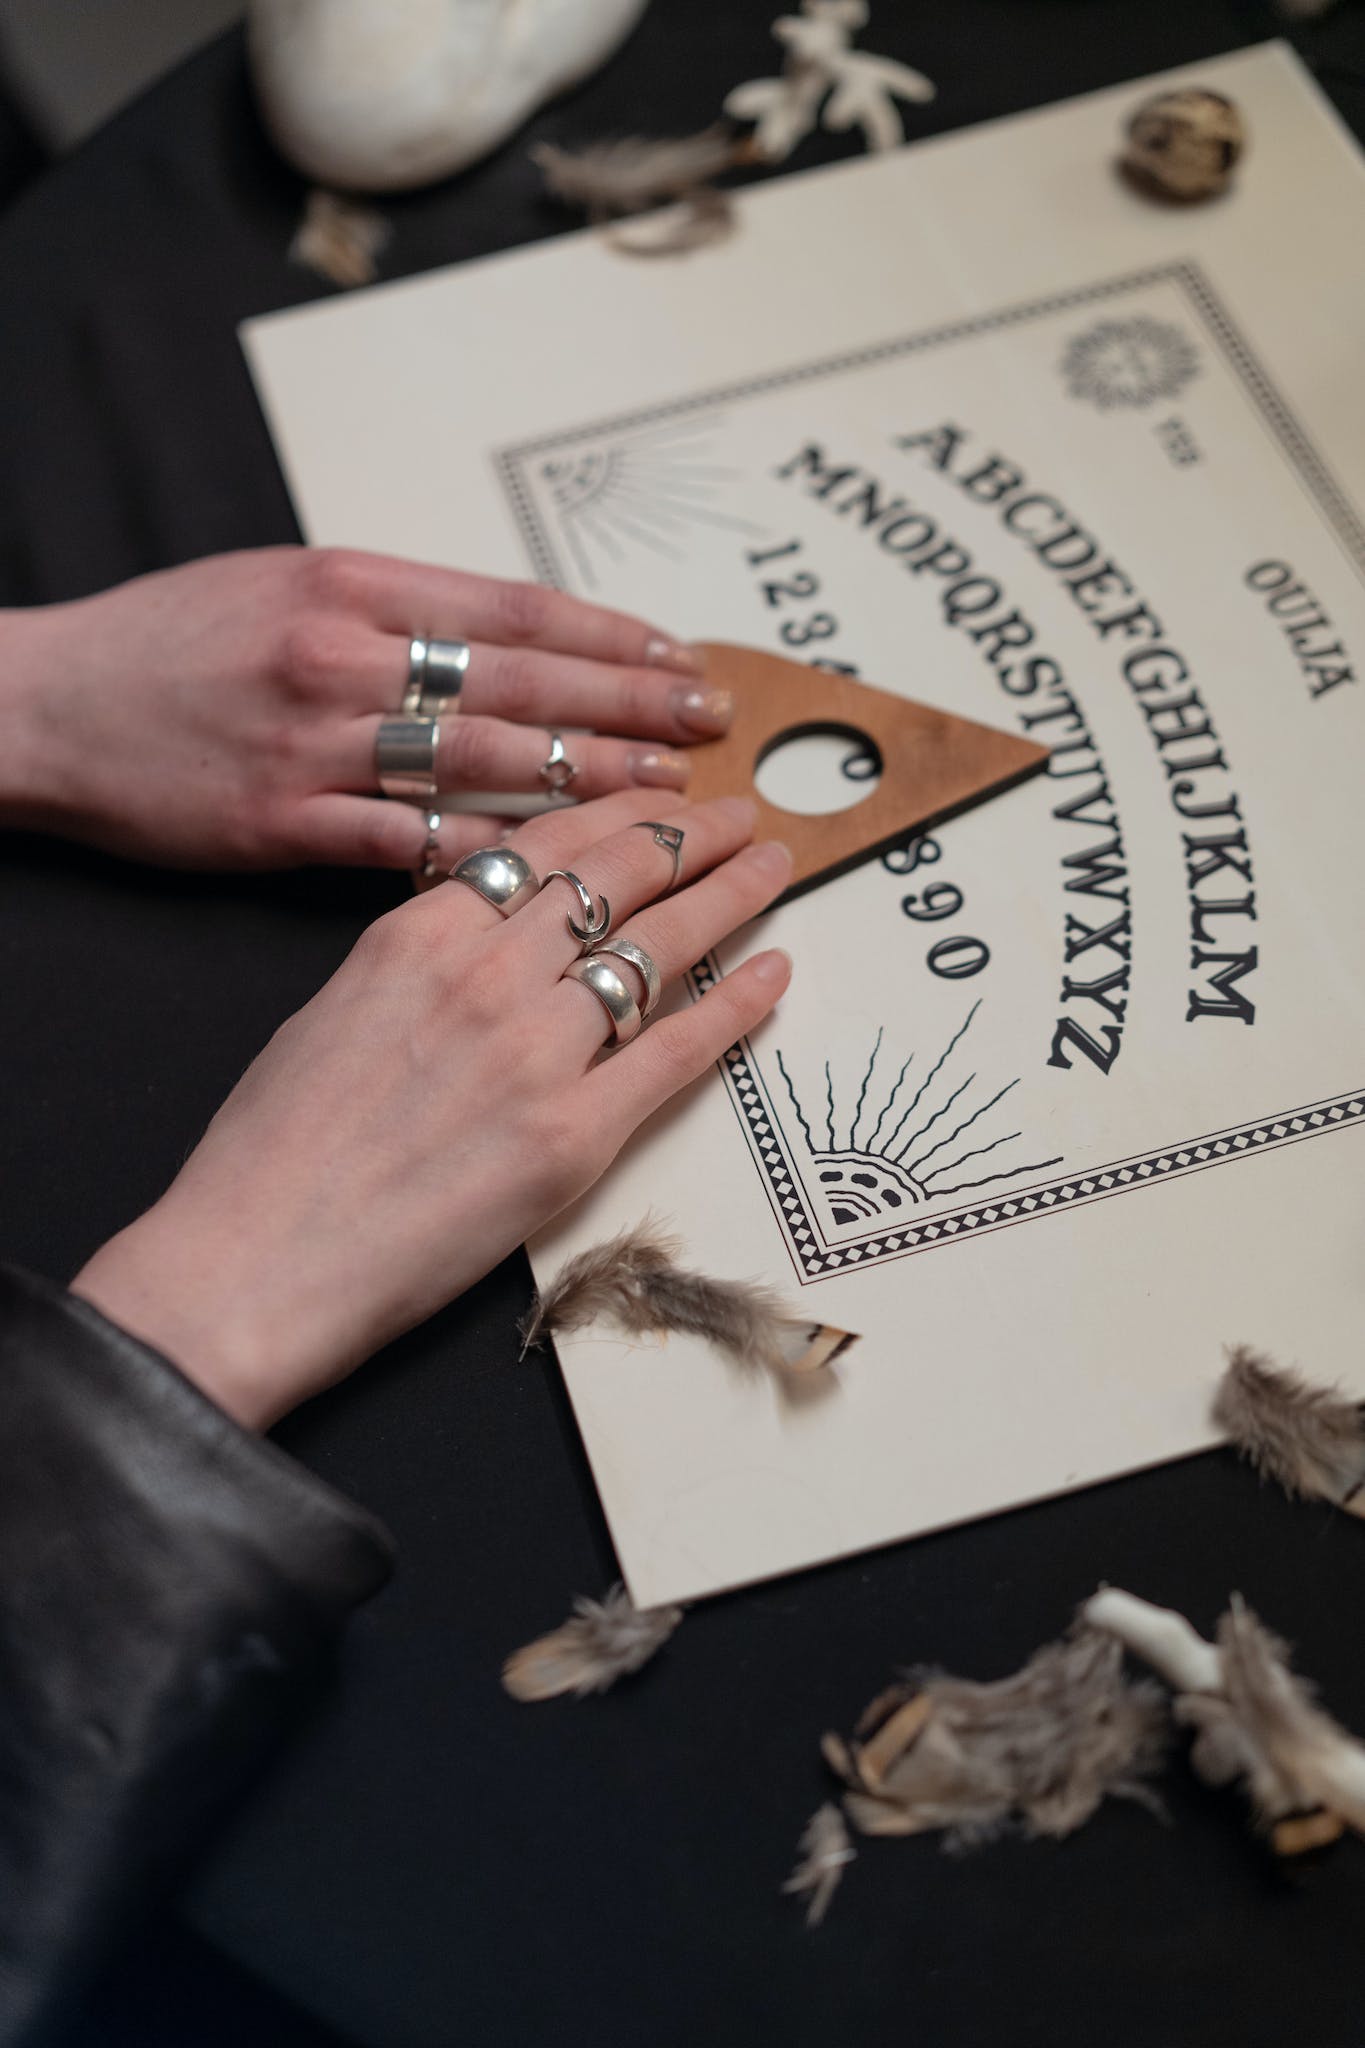 Hands of Women Holding an Arrow on a Ouija Board